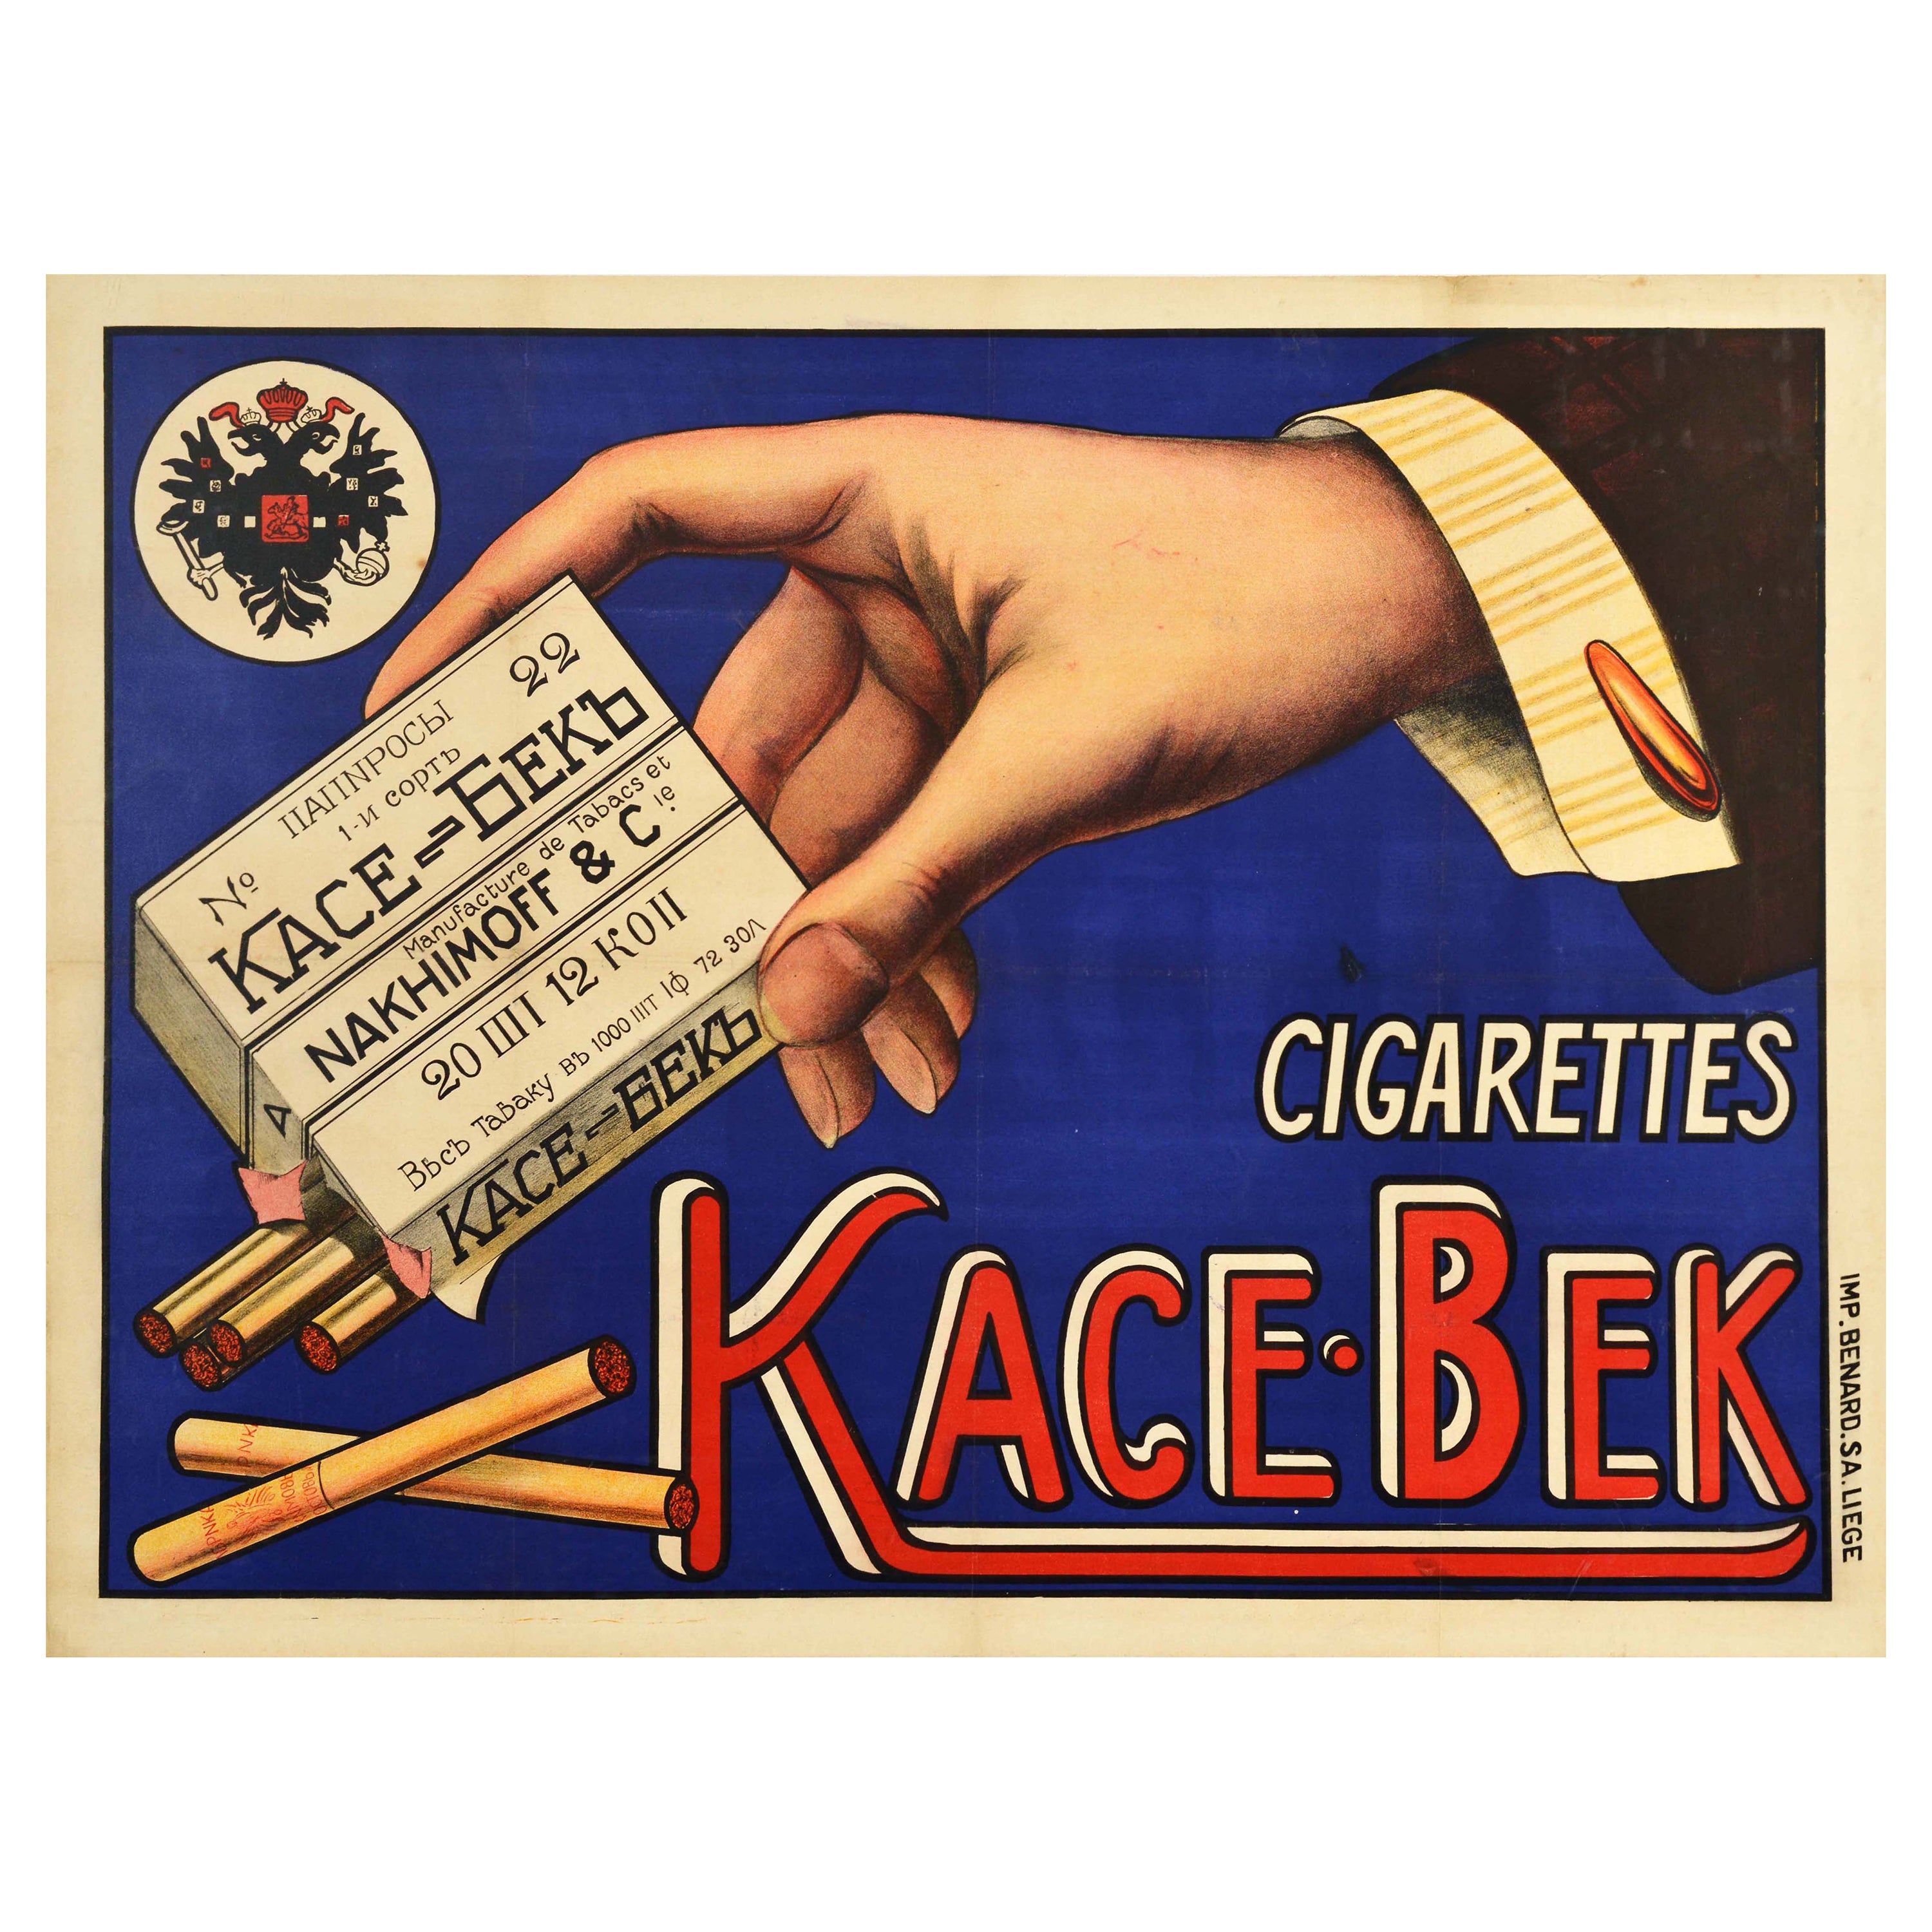 Affiche publicitaire d'origine ancienne originale KaceBek Cigarettes Tobacco Imperial Russia